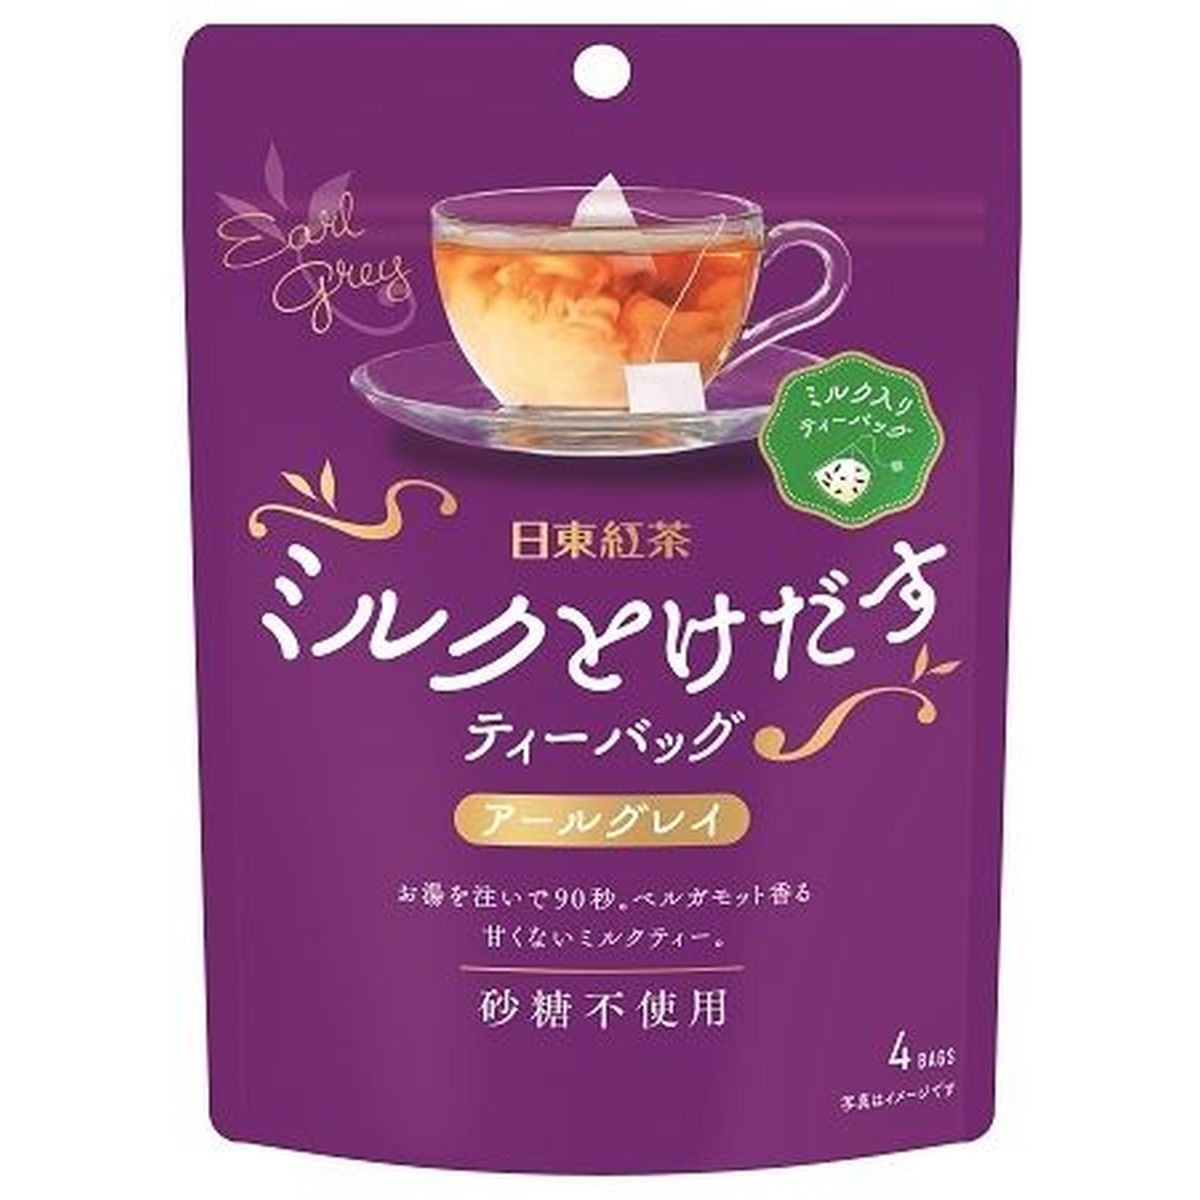 【6個入リ】日東紅茶 ミルクトケダスアールグレイティーバッグ 30g